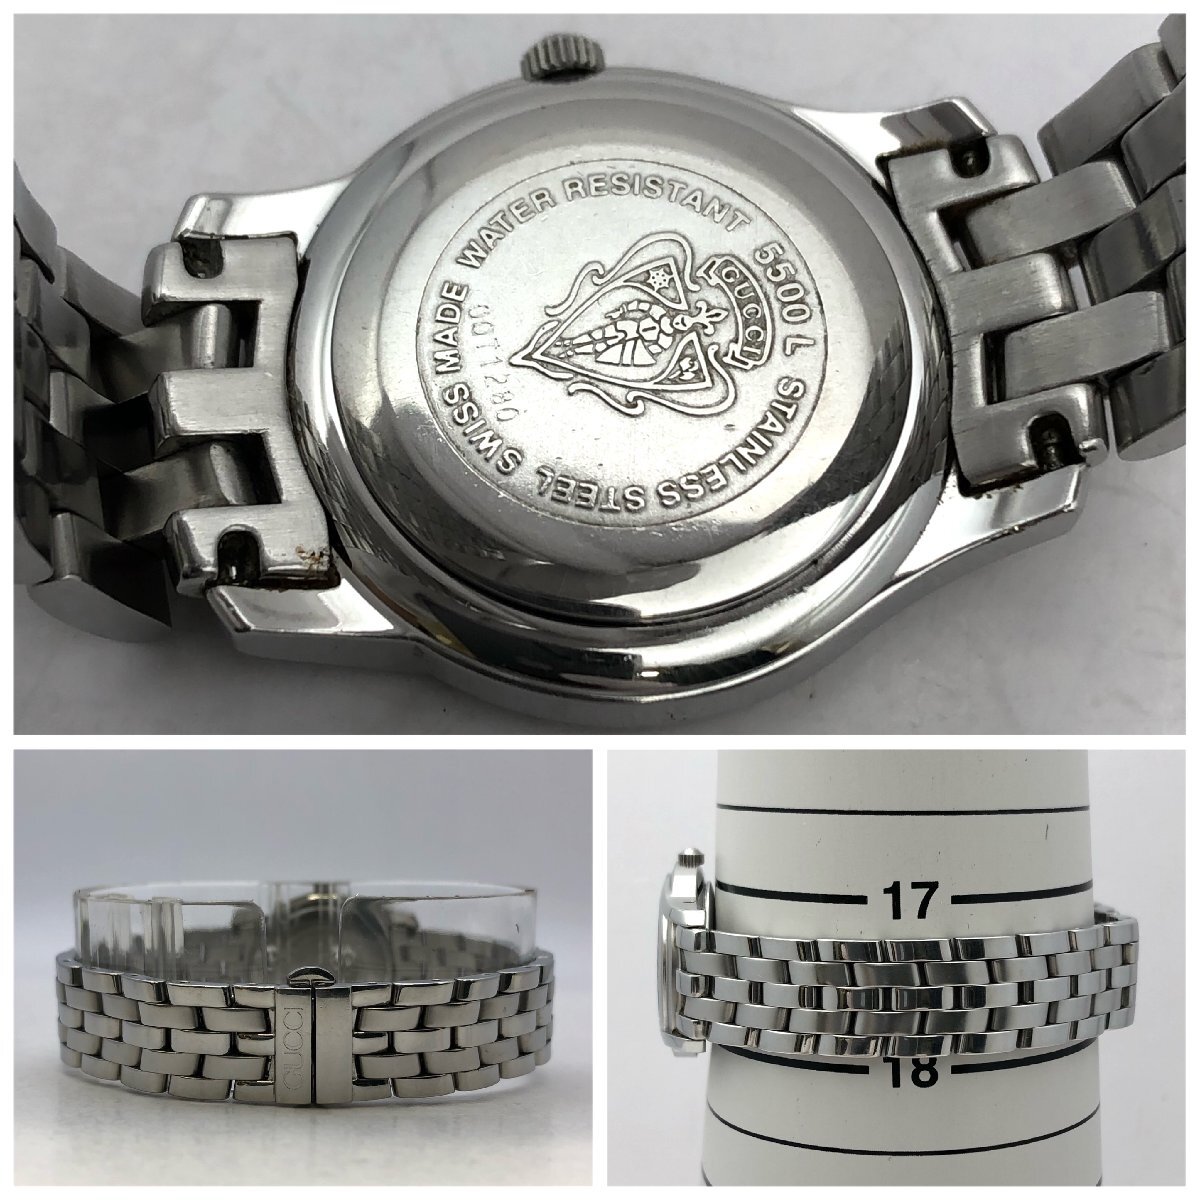 1 jpy ~/GUCCI/ Gucci /5500M/5500L/ 3 hands / Date / black face / Rome n/ pair /2 point summarize / quartz / men's / lady's / wristwatch / Junk /T166